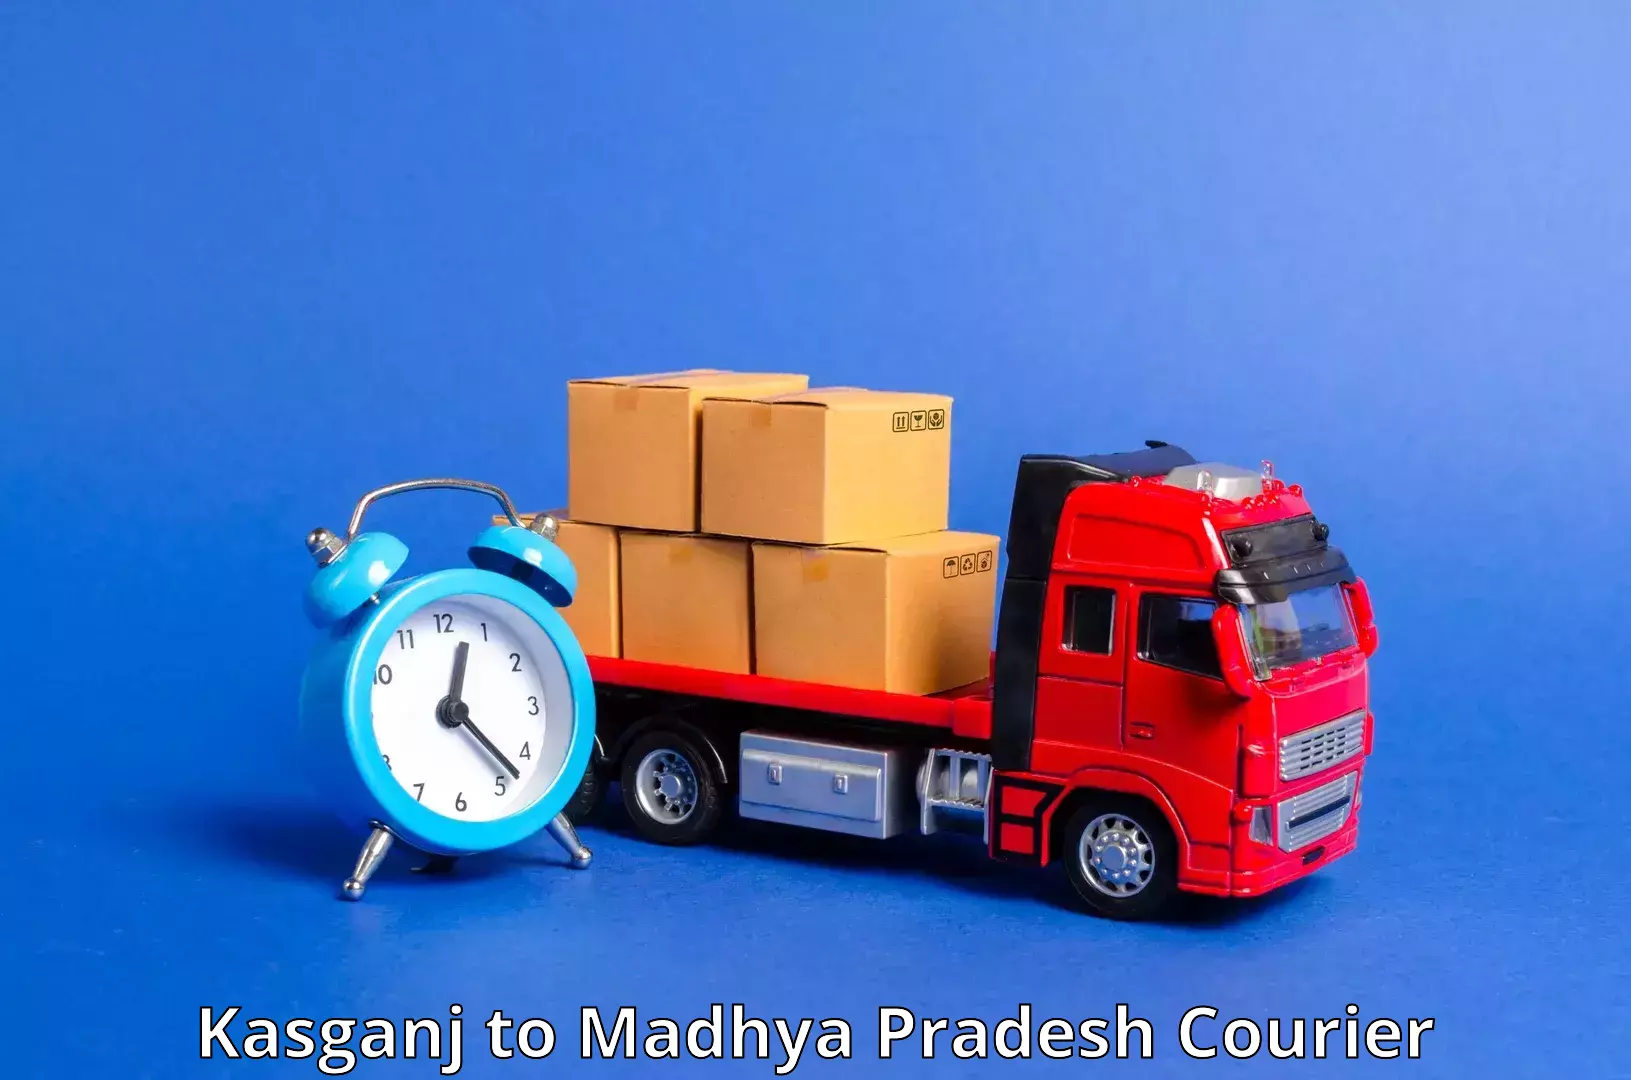 Advanced tracking systems Kasganj to Madhya Pradesh